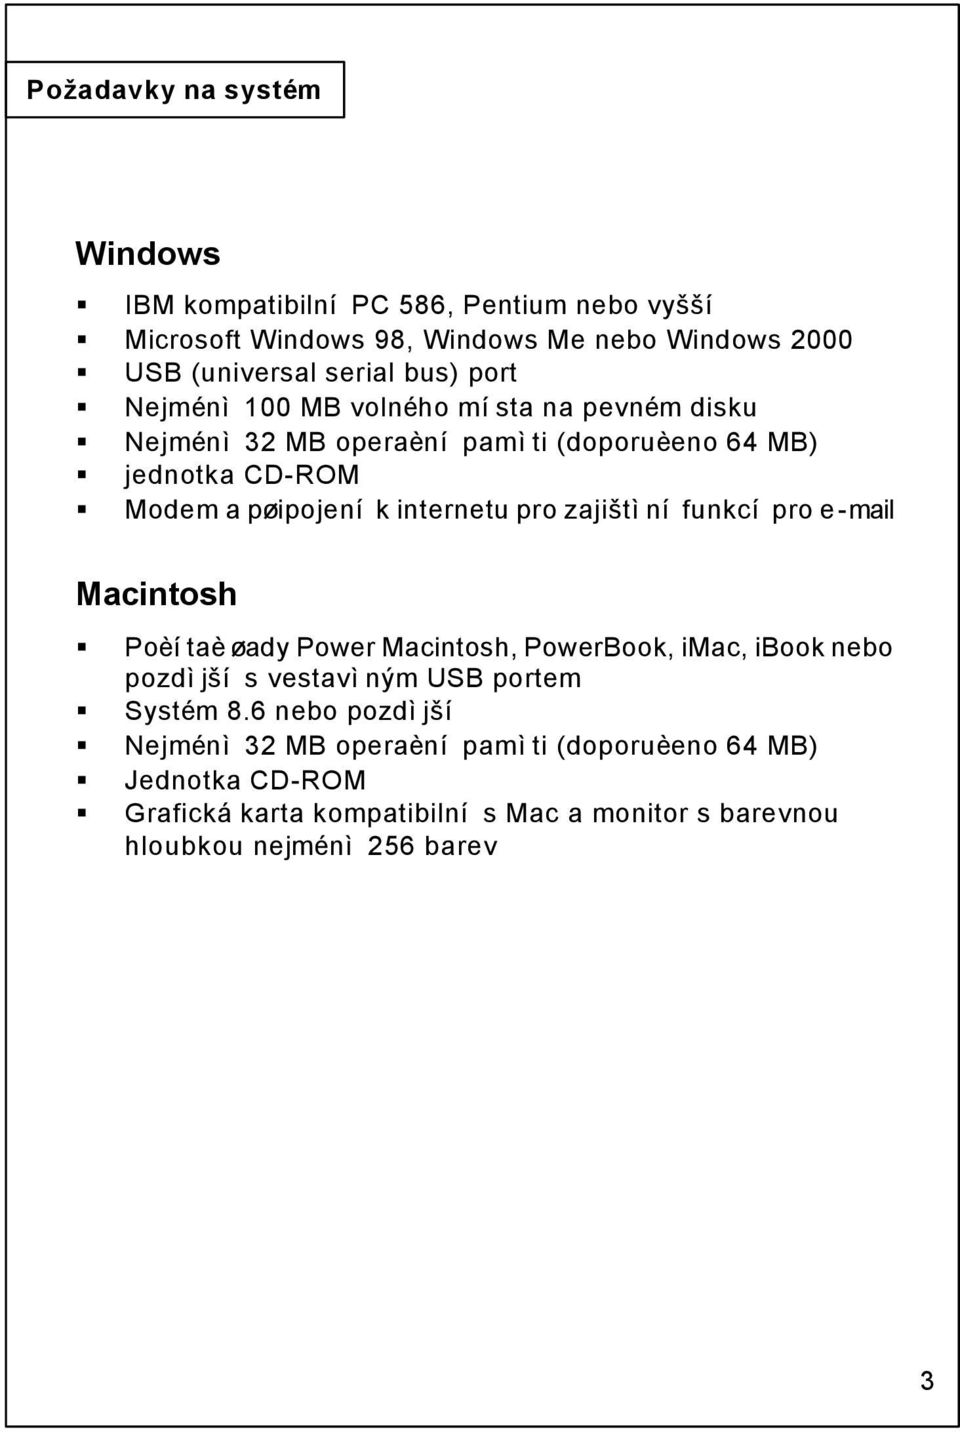 zajištìní funkcí pro e-mail Macintosh Poèítaè øady Power Macintosh, PowerBook, imac, ibook nebo pozdìjší s vestavìným USB portem Systém 8.